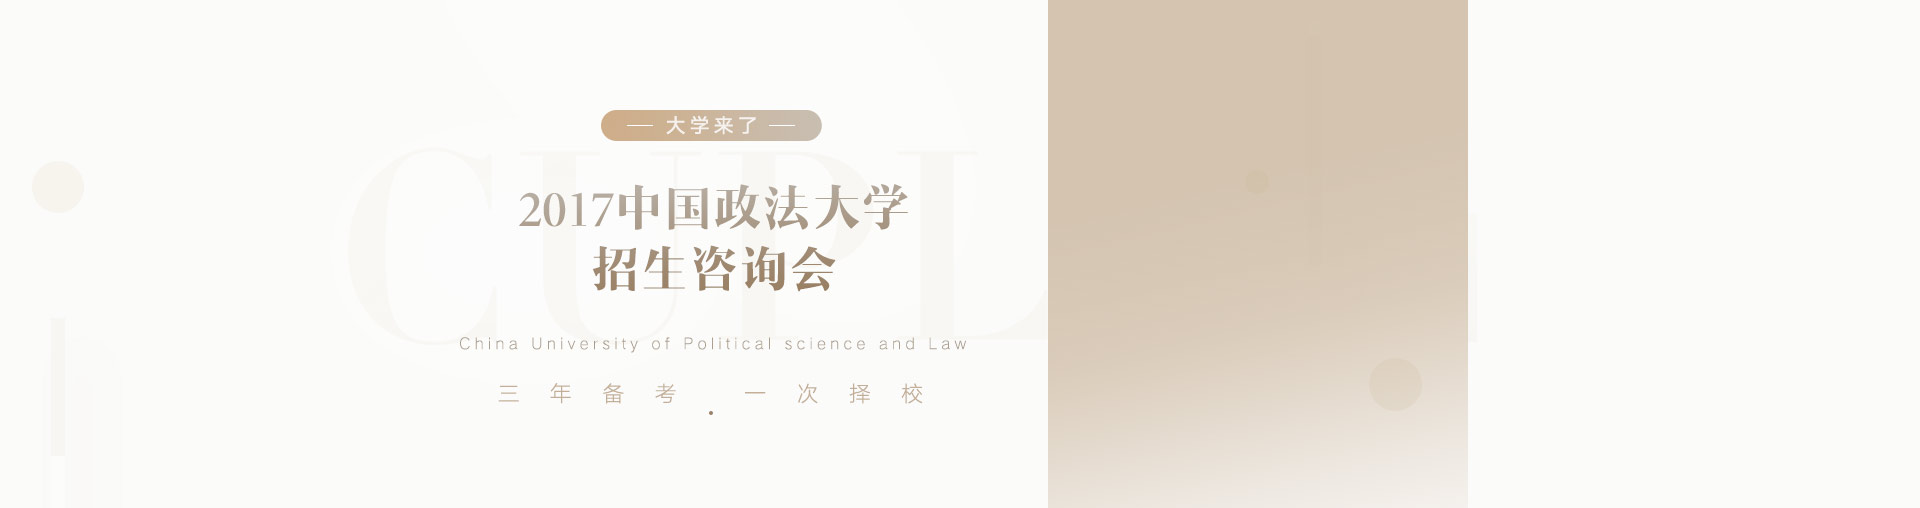 中国政法大学2017招生咨询会